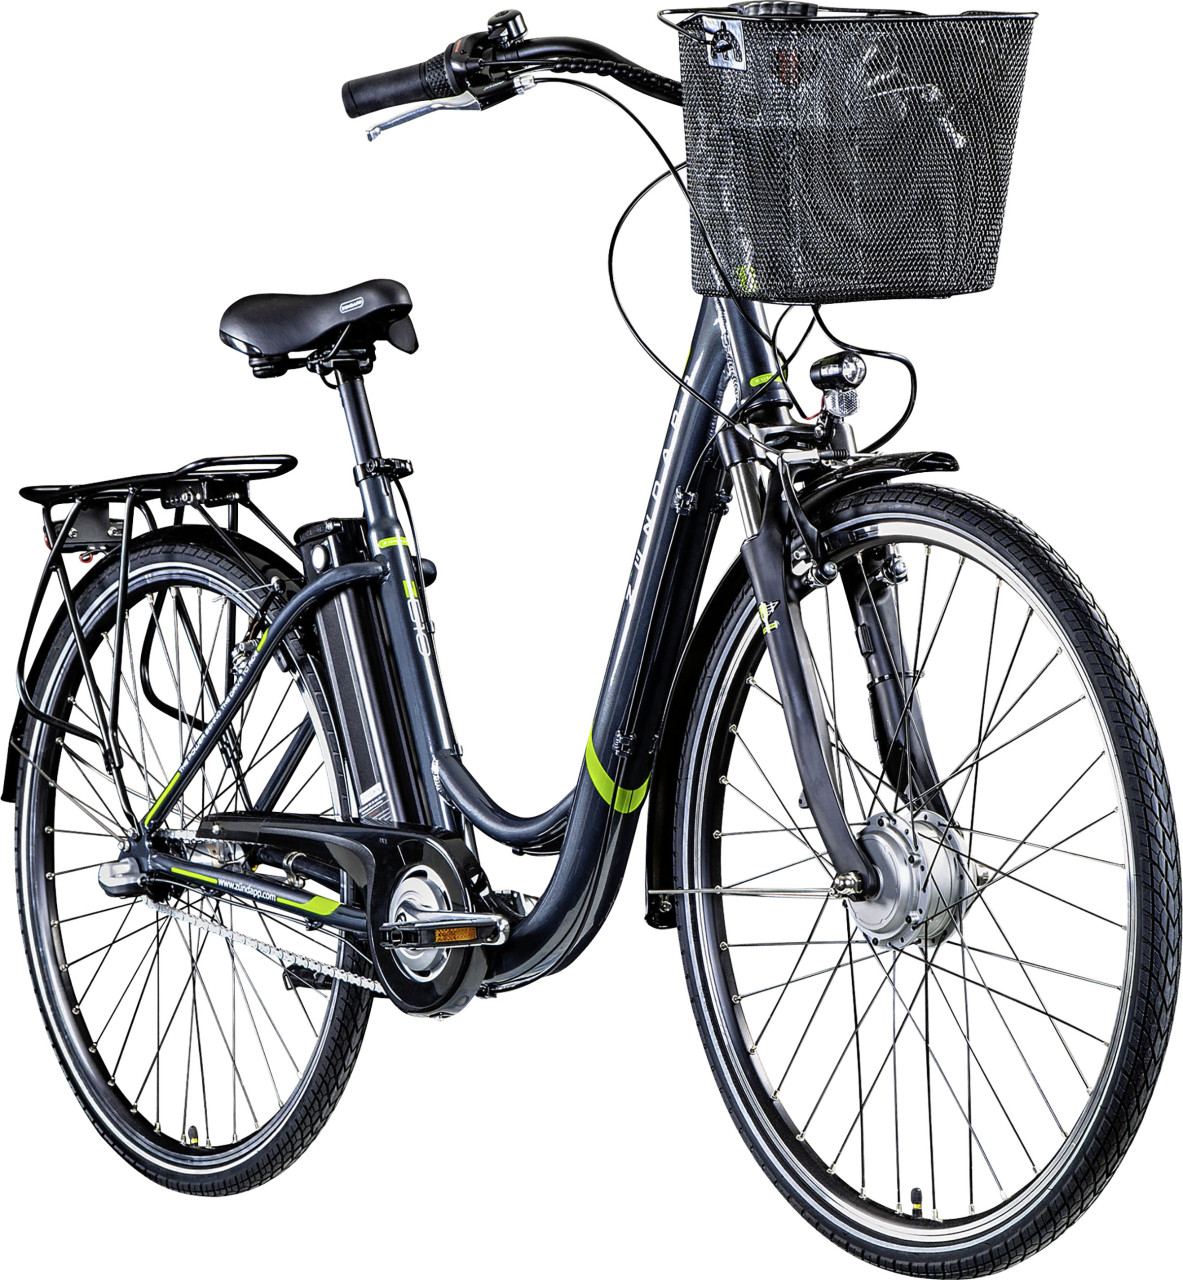 Zündapp E-Bike City Z510 700c Damen 28 Zoll RH 48cm 3-Gang 374 Wh grau grün von Zündapp